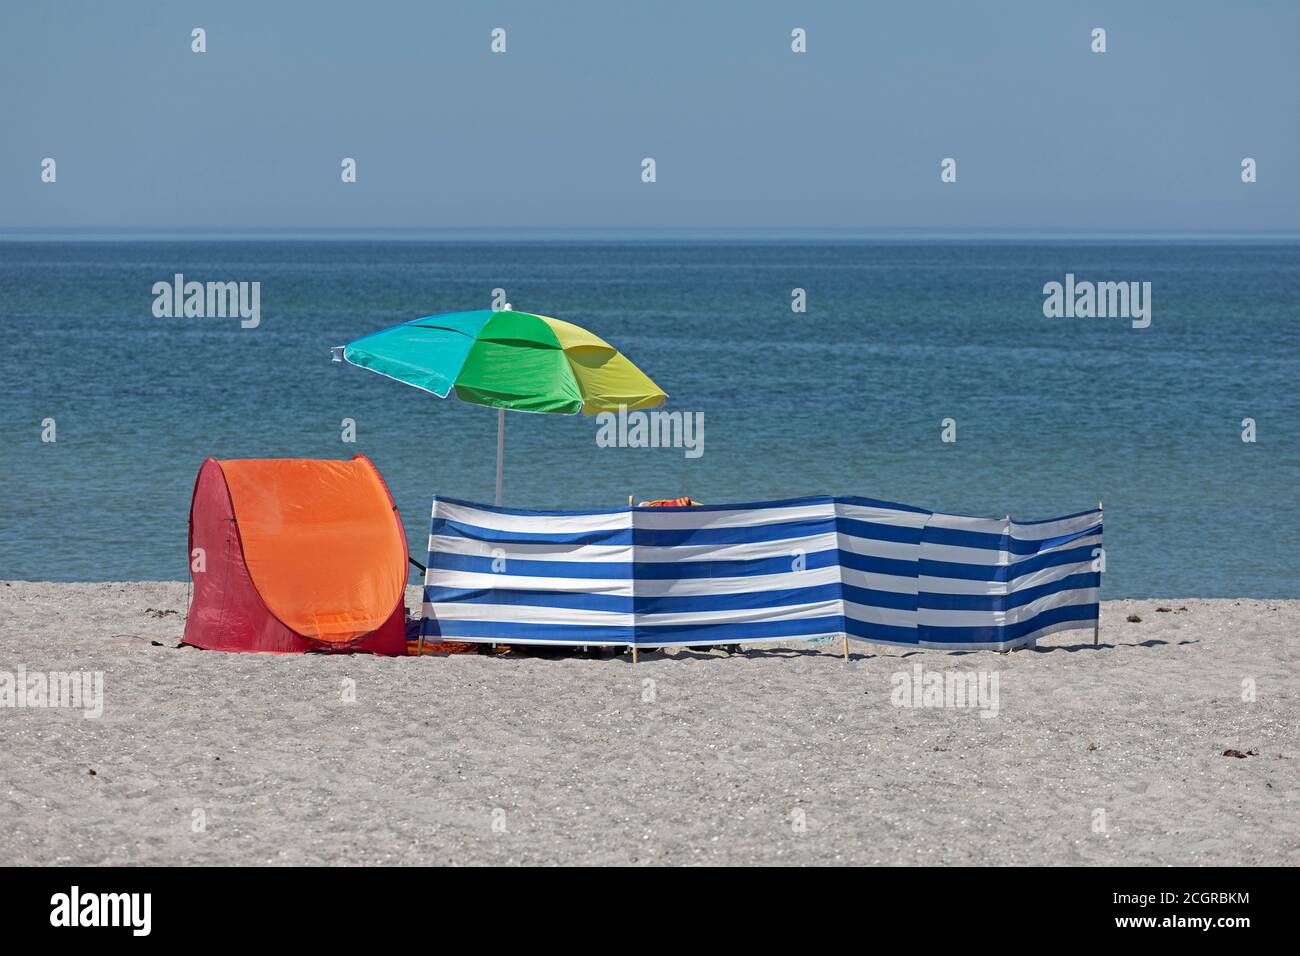 Tenda da spiaggia, parasolo e vento da spiaggia, Wustrow, Meclemburgo-Pomerania occidentale, Germania Foto Stock